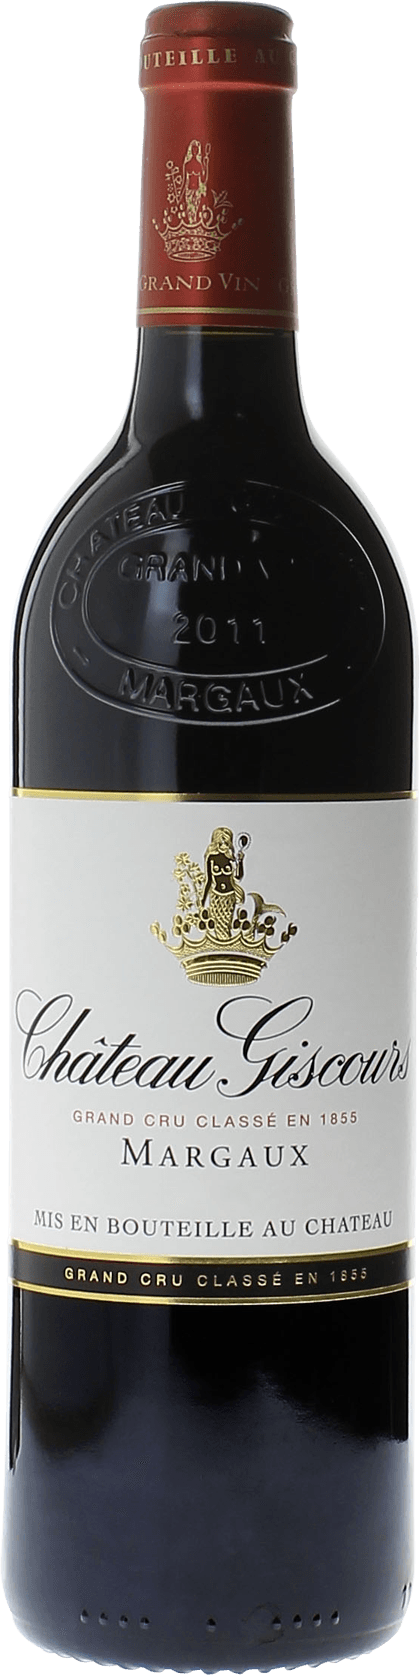 Giscours 1990 3me Grand cru class Margaux, Bordeaux rouge